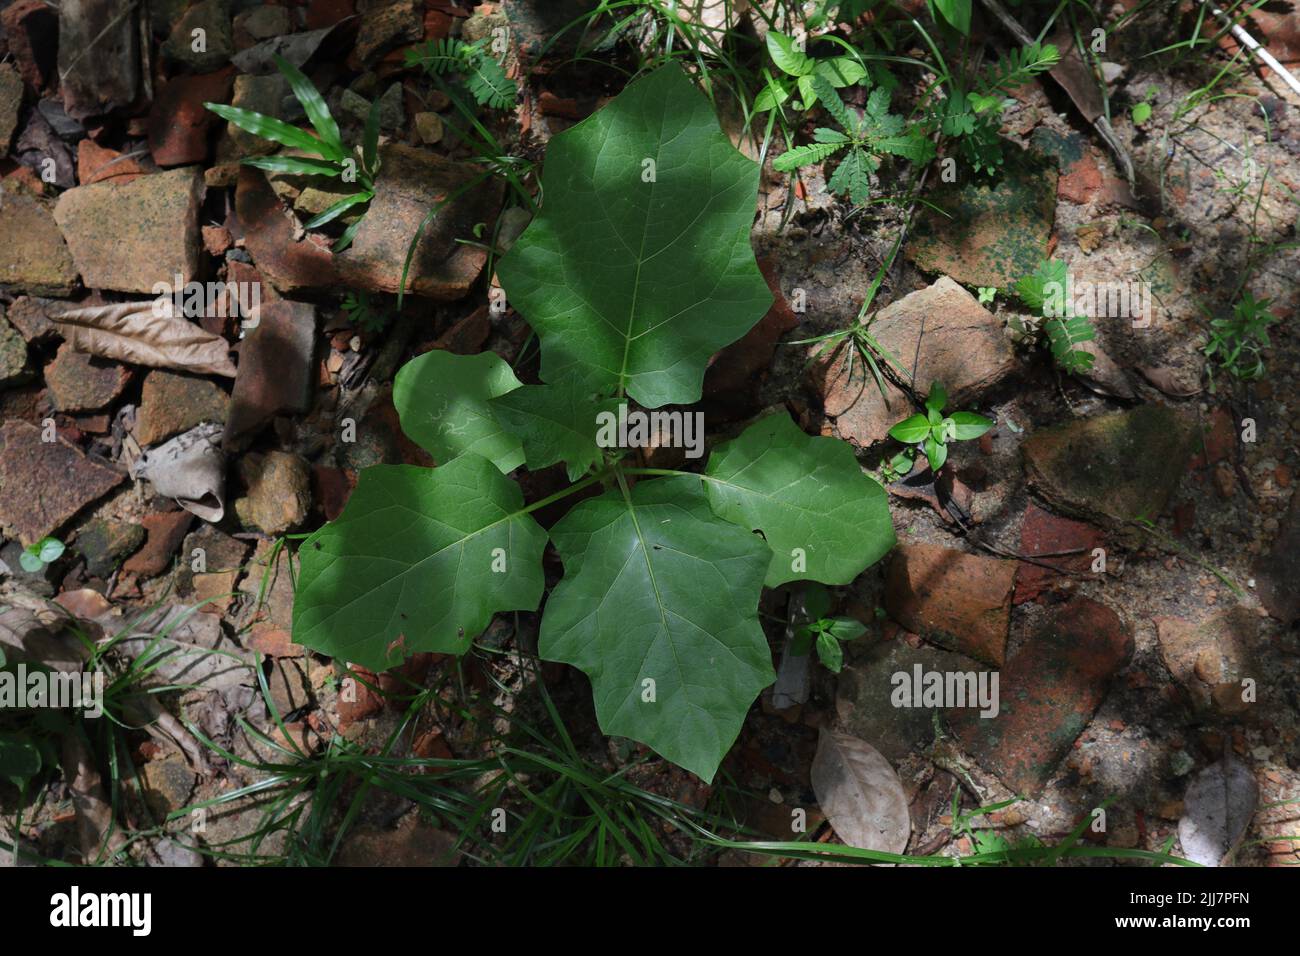 Vista ad angolo alto di una piccola bacca di tacchino (Solanum Torvum) pianta che cresce sul terreno circondato da erbacce e pezzi rotti di tegole Foto Stock